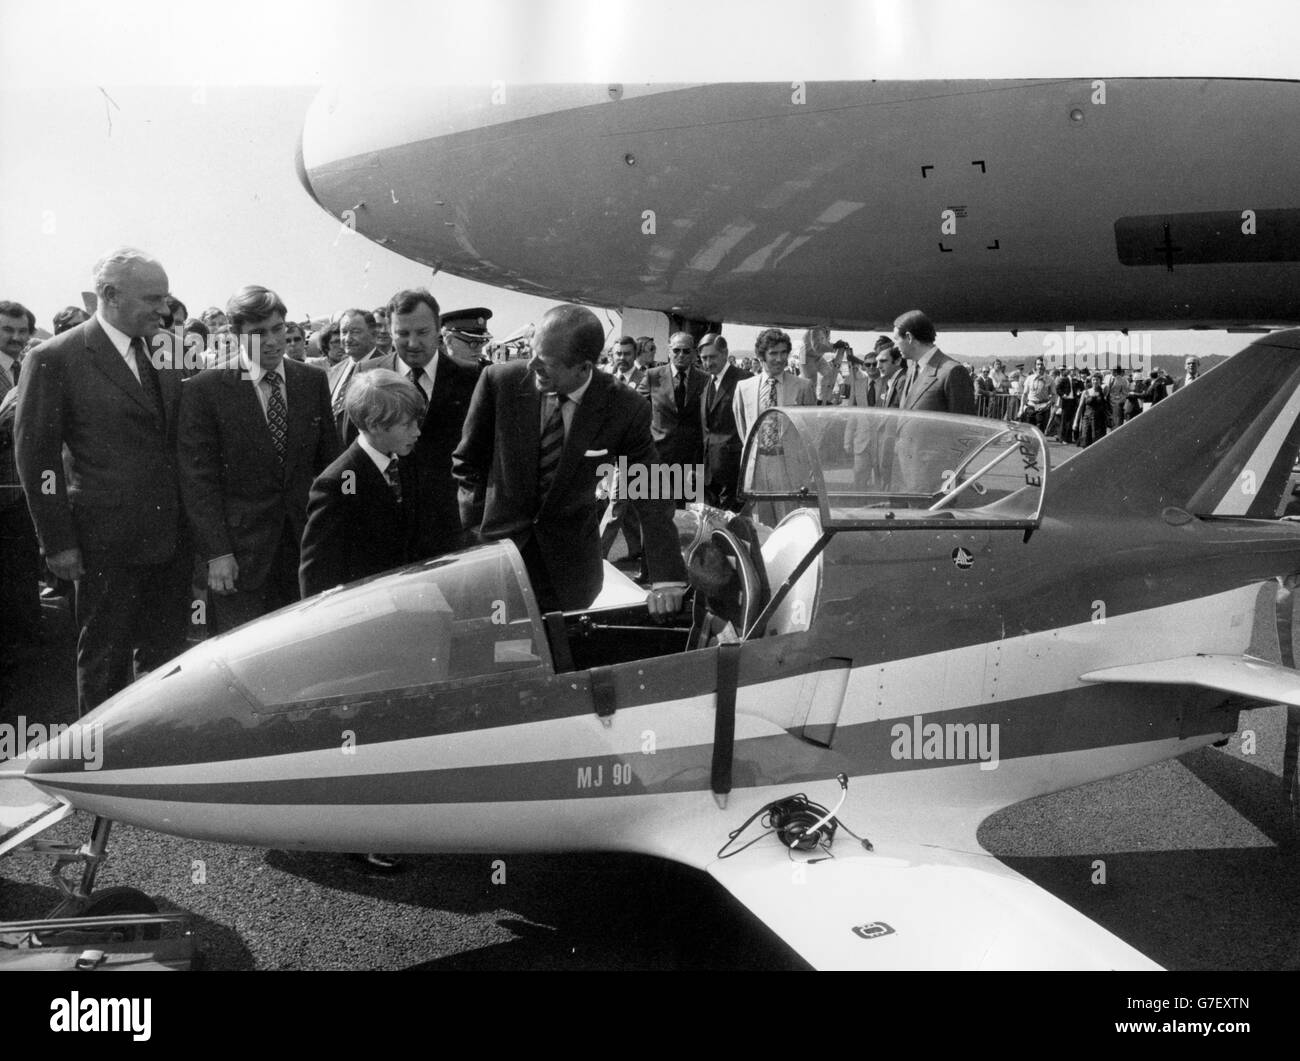 Auf der Farnborough Airshow brachte der Herzog von Edinburgh seine Söhne - Prinz Andrew (zweite links) und Prinz Edward (Mitte) - zum Lachen, als er auf diesen Midjet-Jet hinwies, der die Bede M J 98 wie ein 'Luftfahrtzeug' aussah. *Eingescannte Low-Res aus dem Druck, High-Res auf Anfrage* Stockfoto